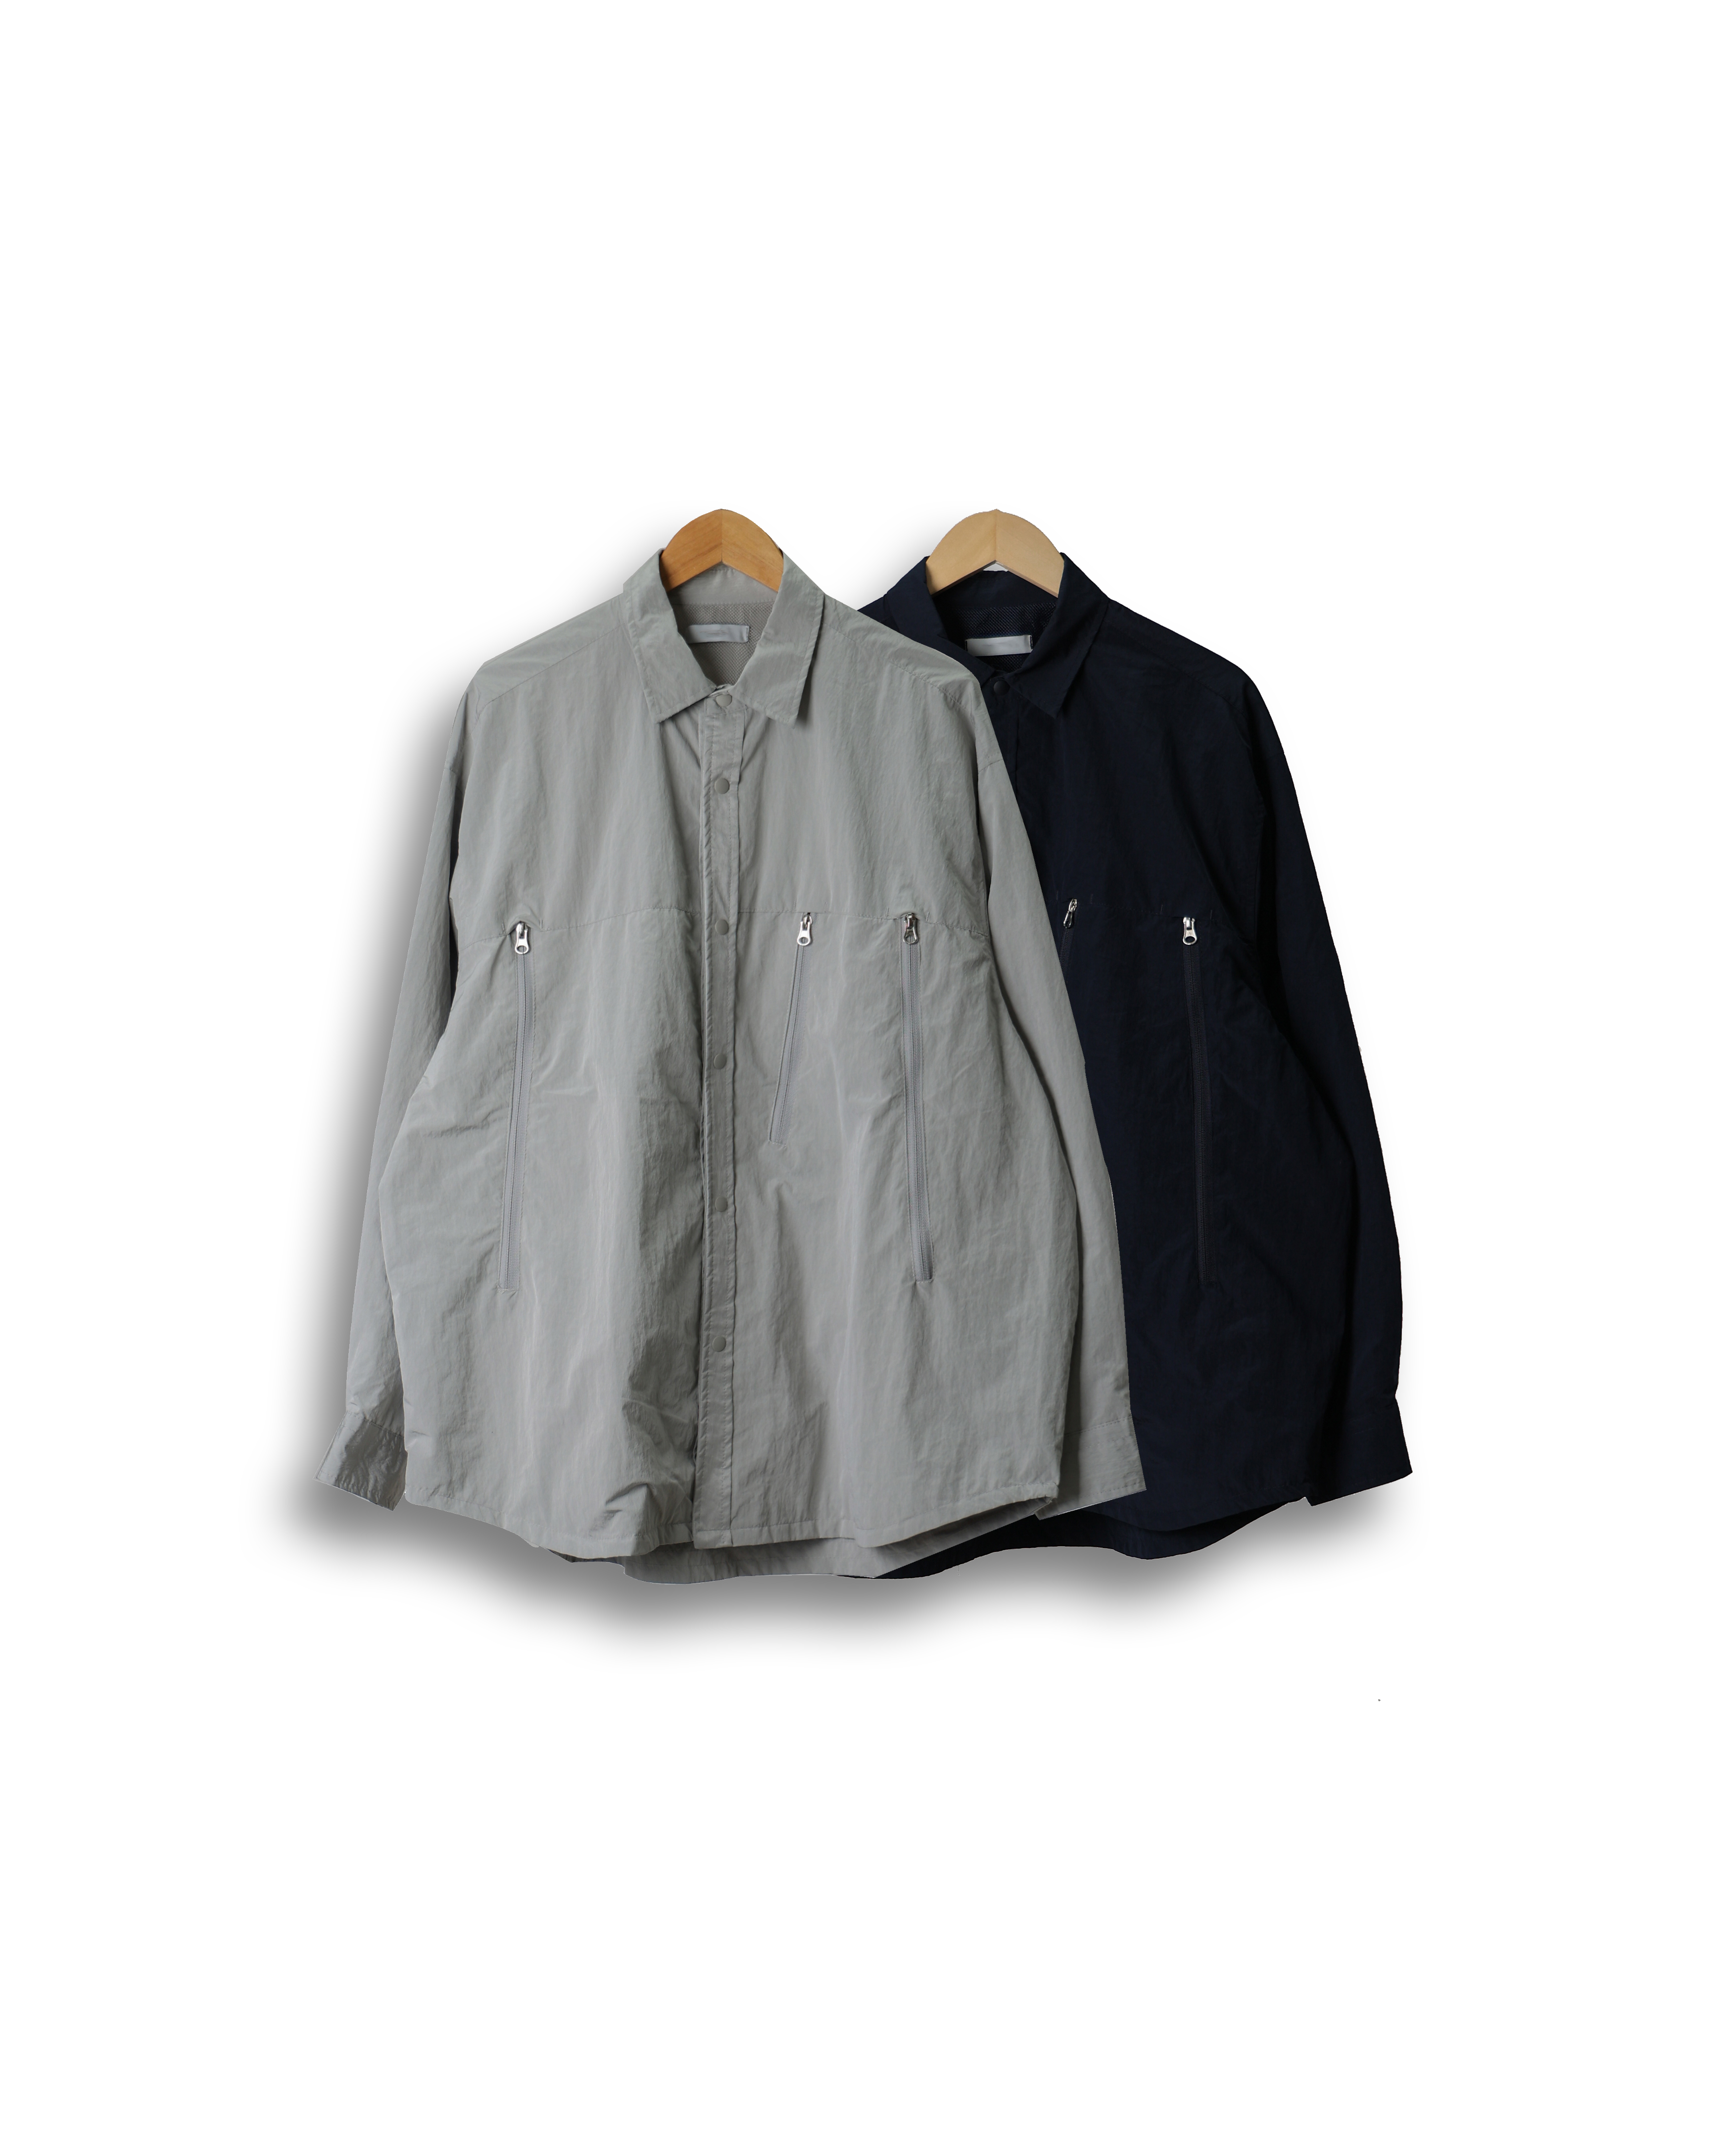 PECTOR SOLID Oversized Zip Jacket (Navy/Gray)